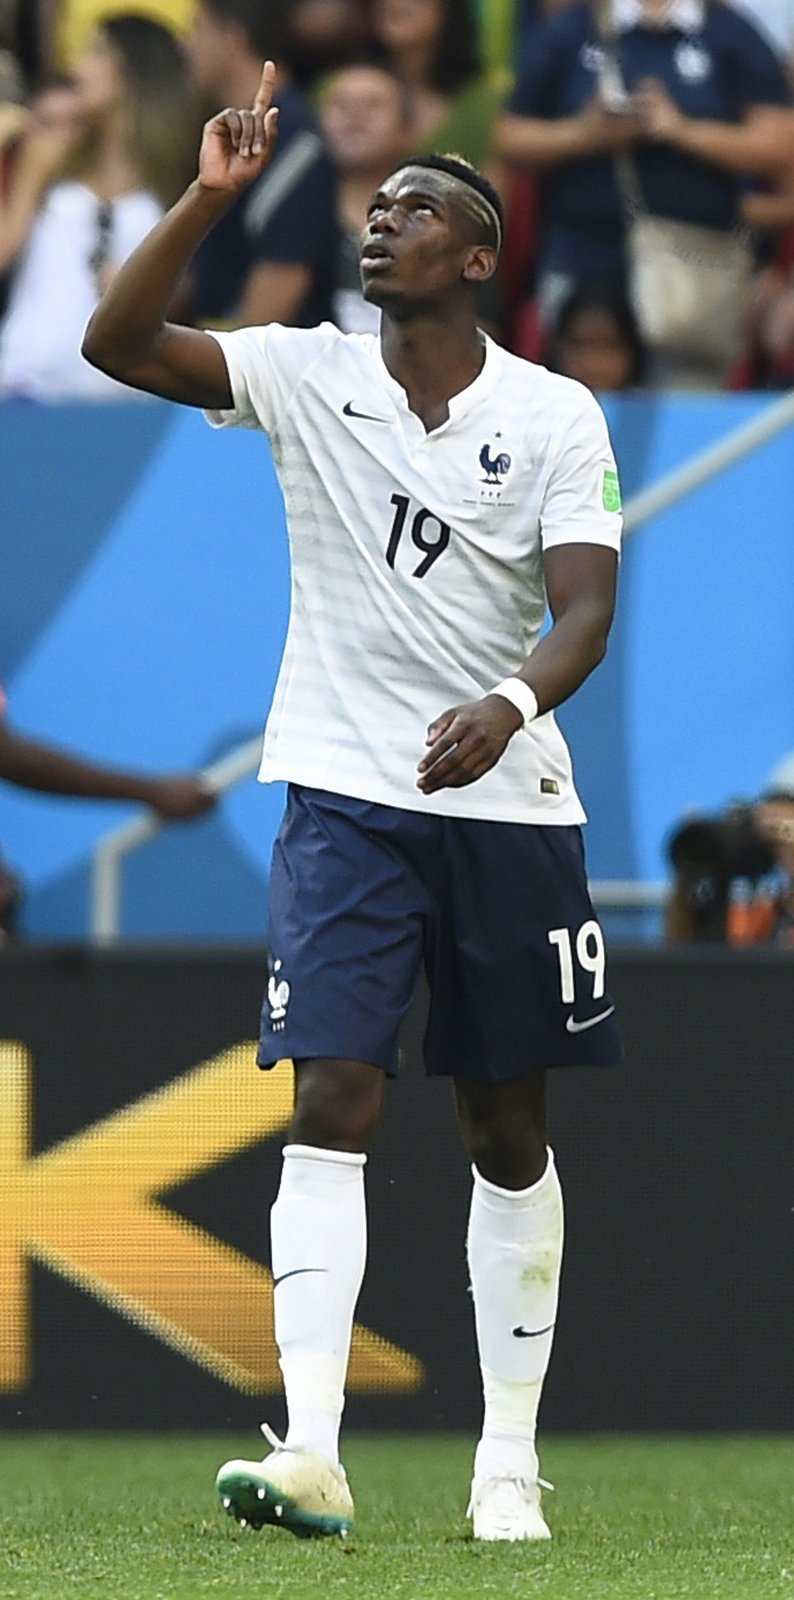 Byla jasným favoritem, přesto rozhodla až góly v závěru zápasu. Francie v osmifinále MS proti Nigérii nezářila, nakonec ale díky zásahu Pogby a vlastního gólu Yoba těžký duel zvládla, vyhrála 2:0 a postupuje do čtvrtfinále.